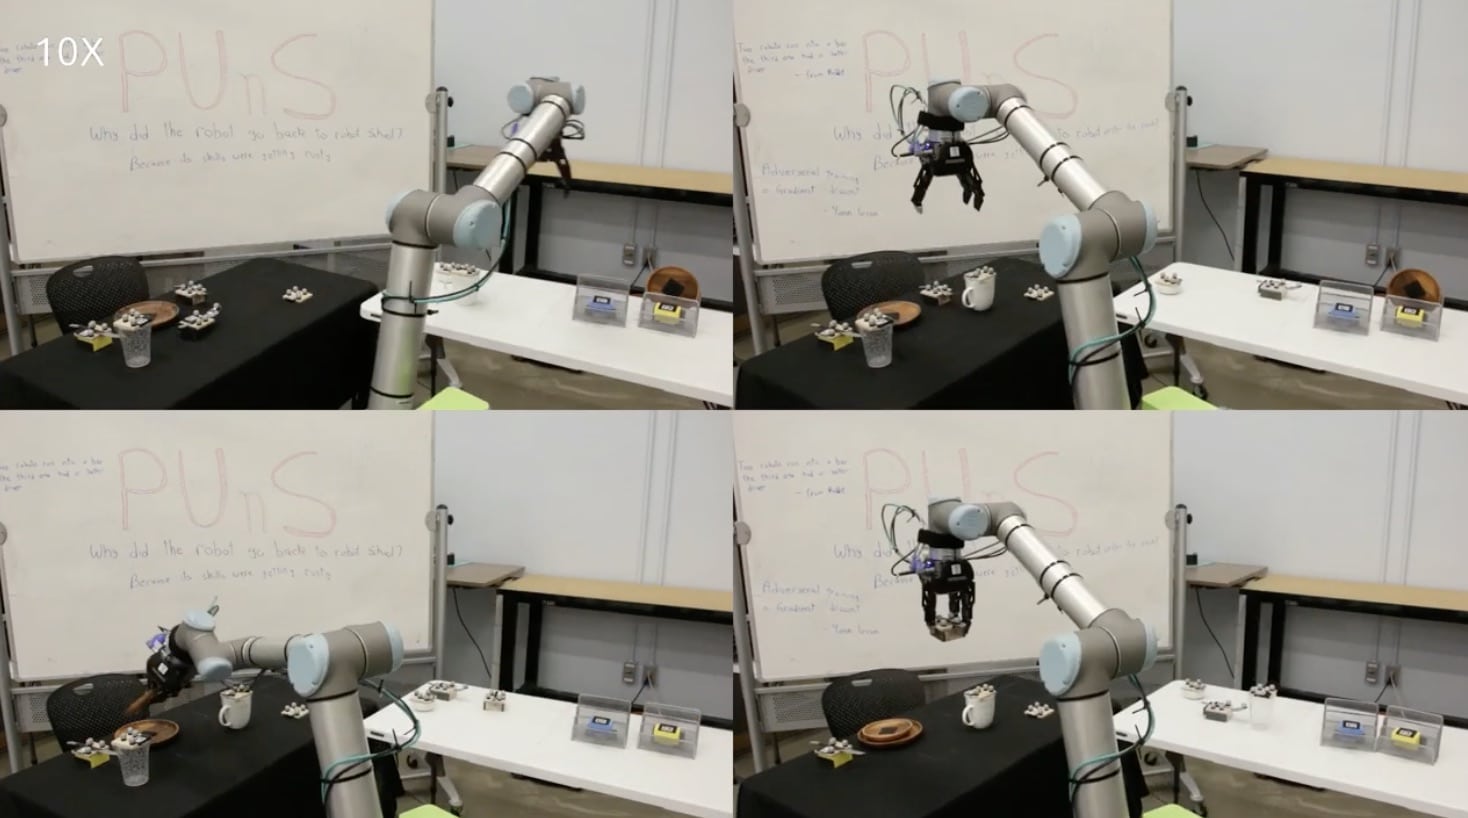 Des robots qui apprennent en observant les humains.